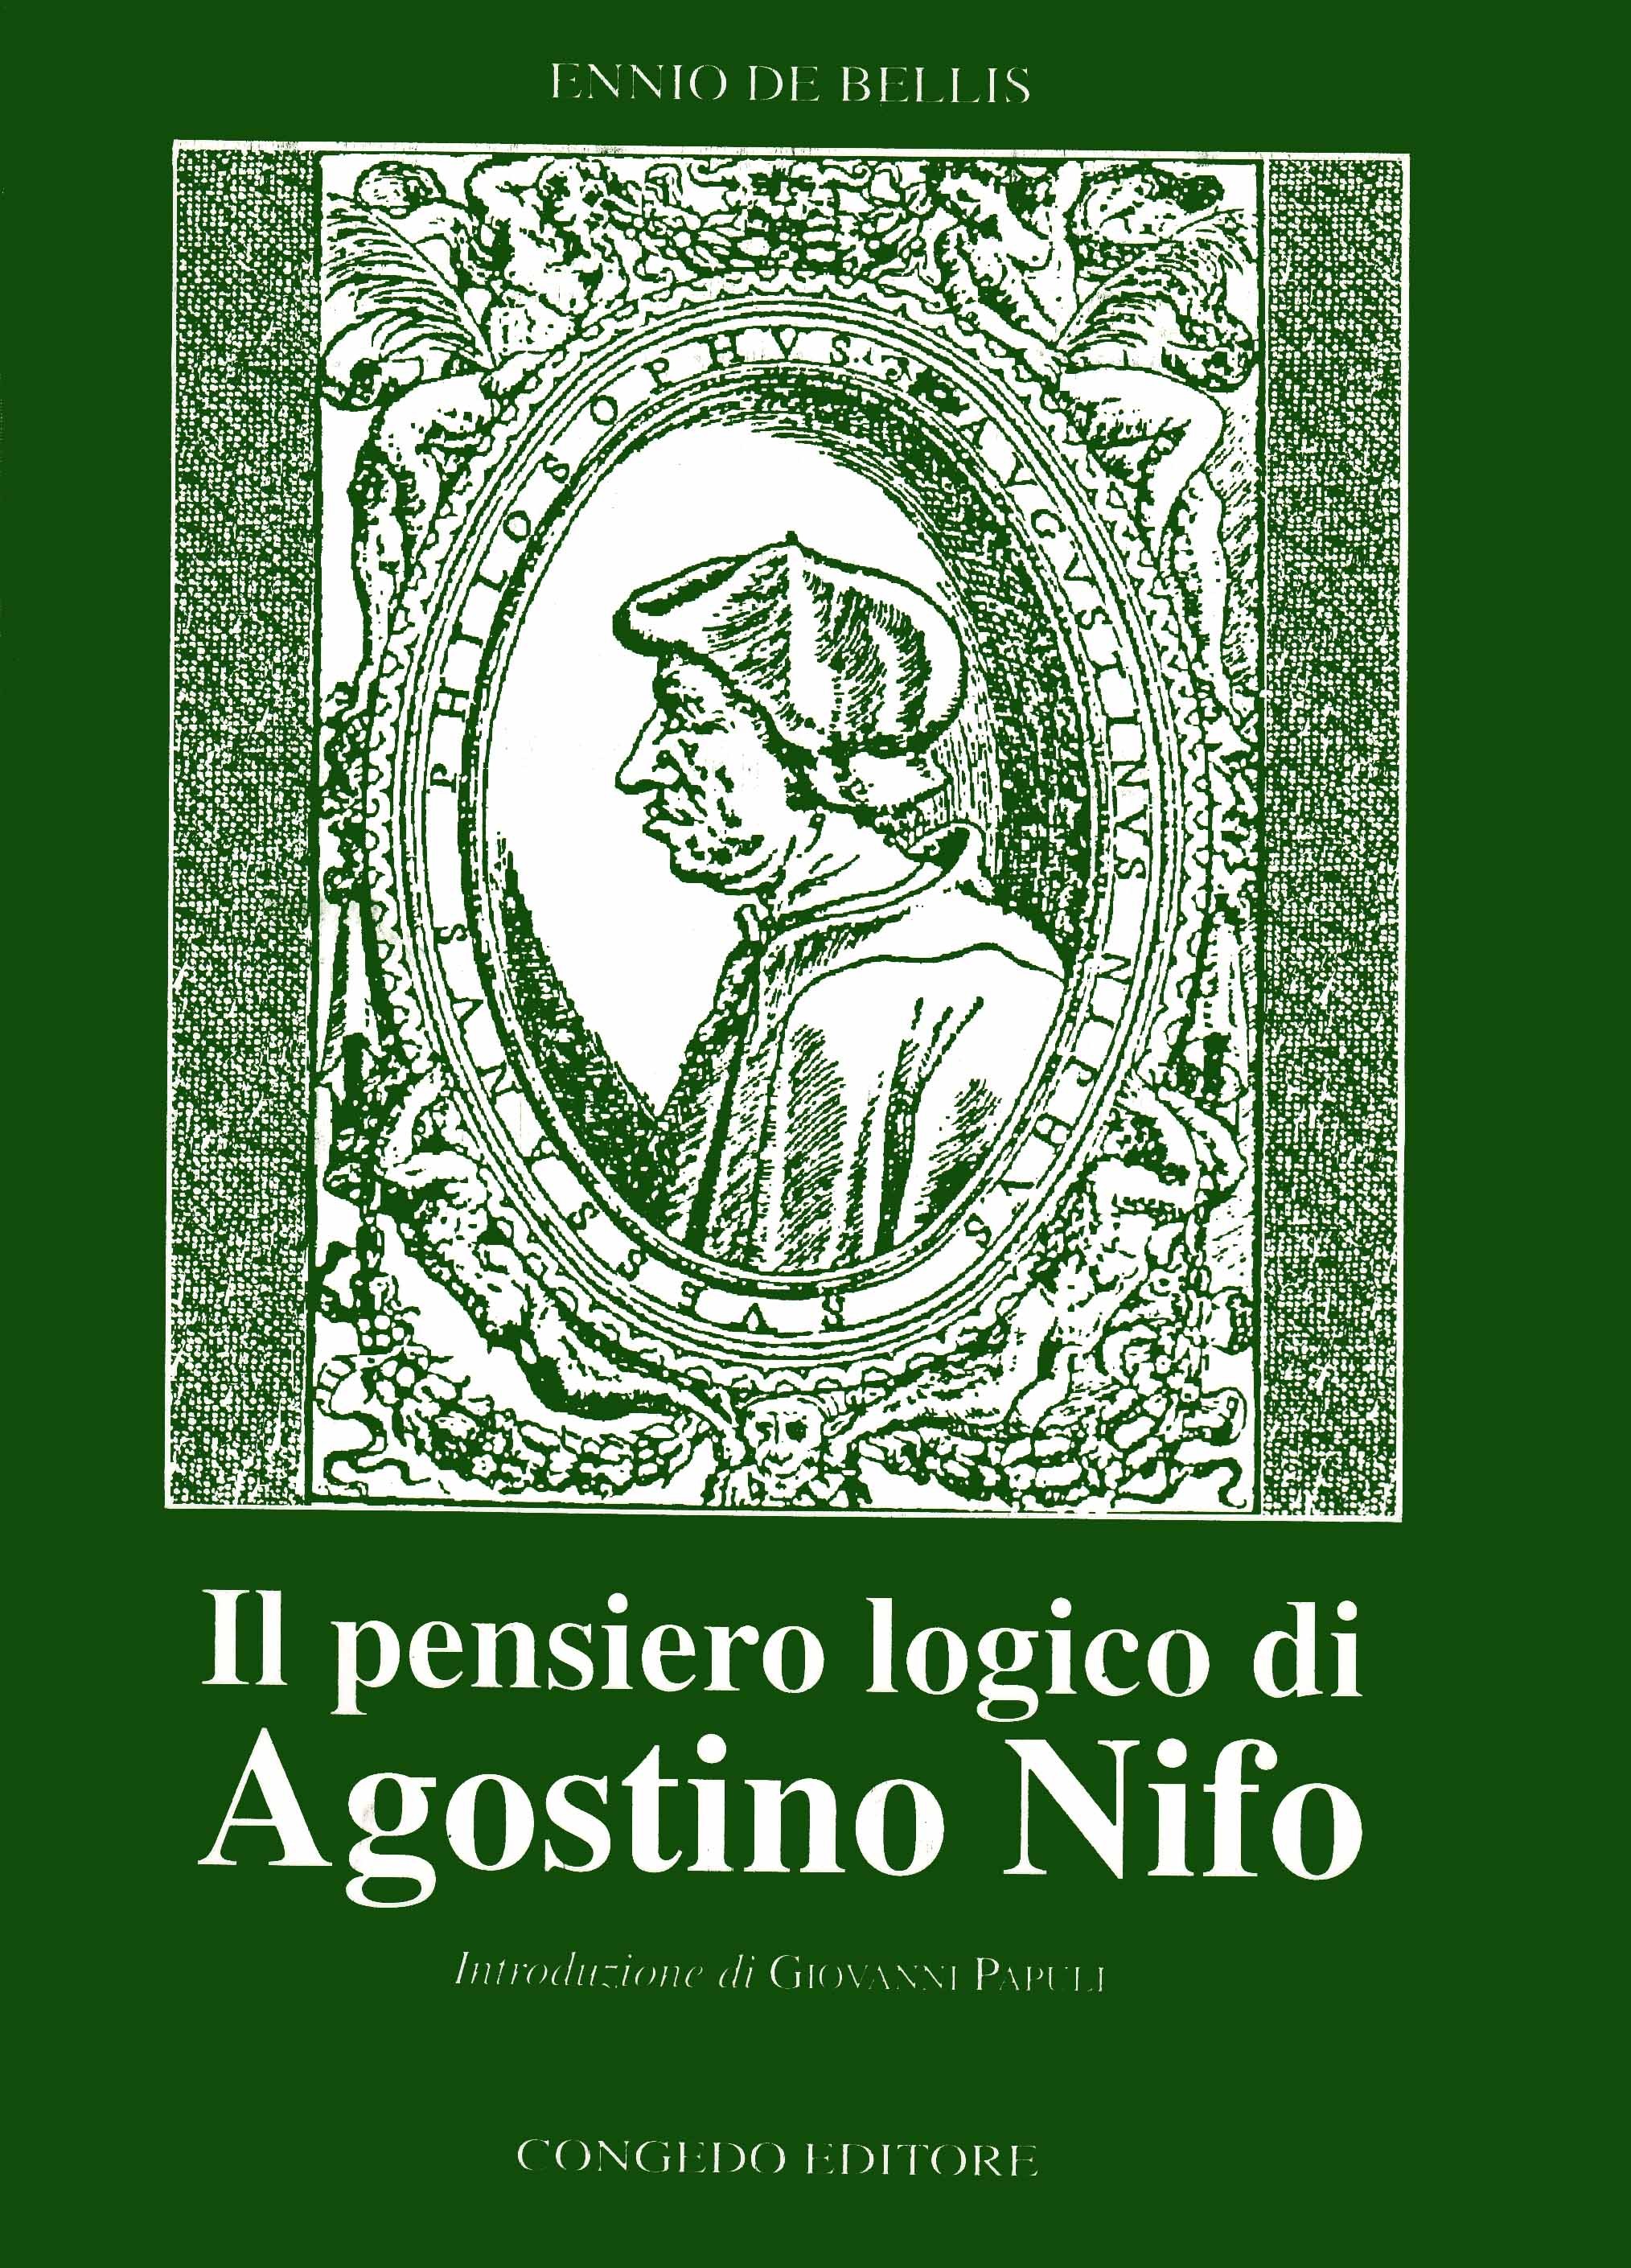 Il pensiero logico di Agostino Nifo